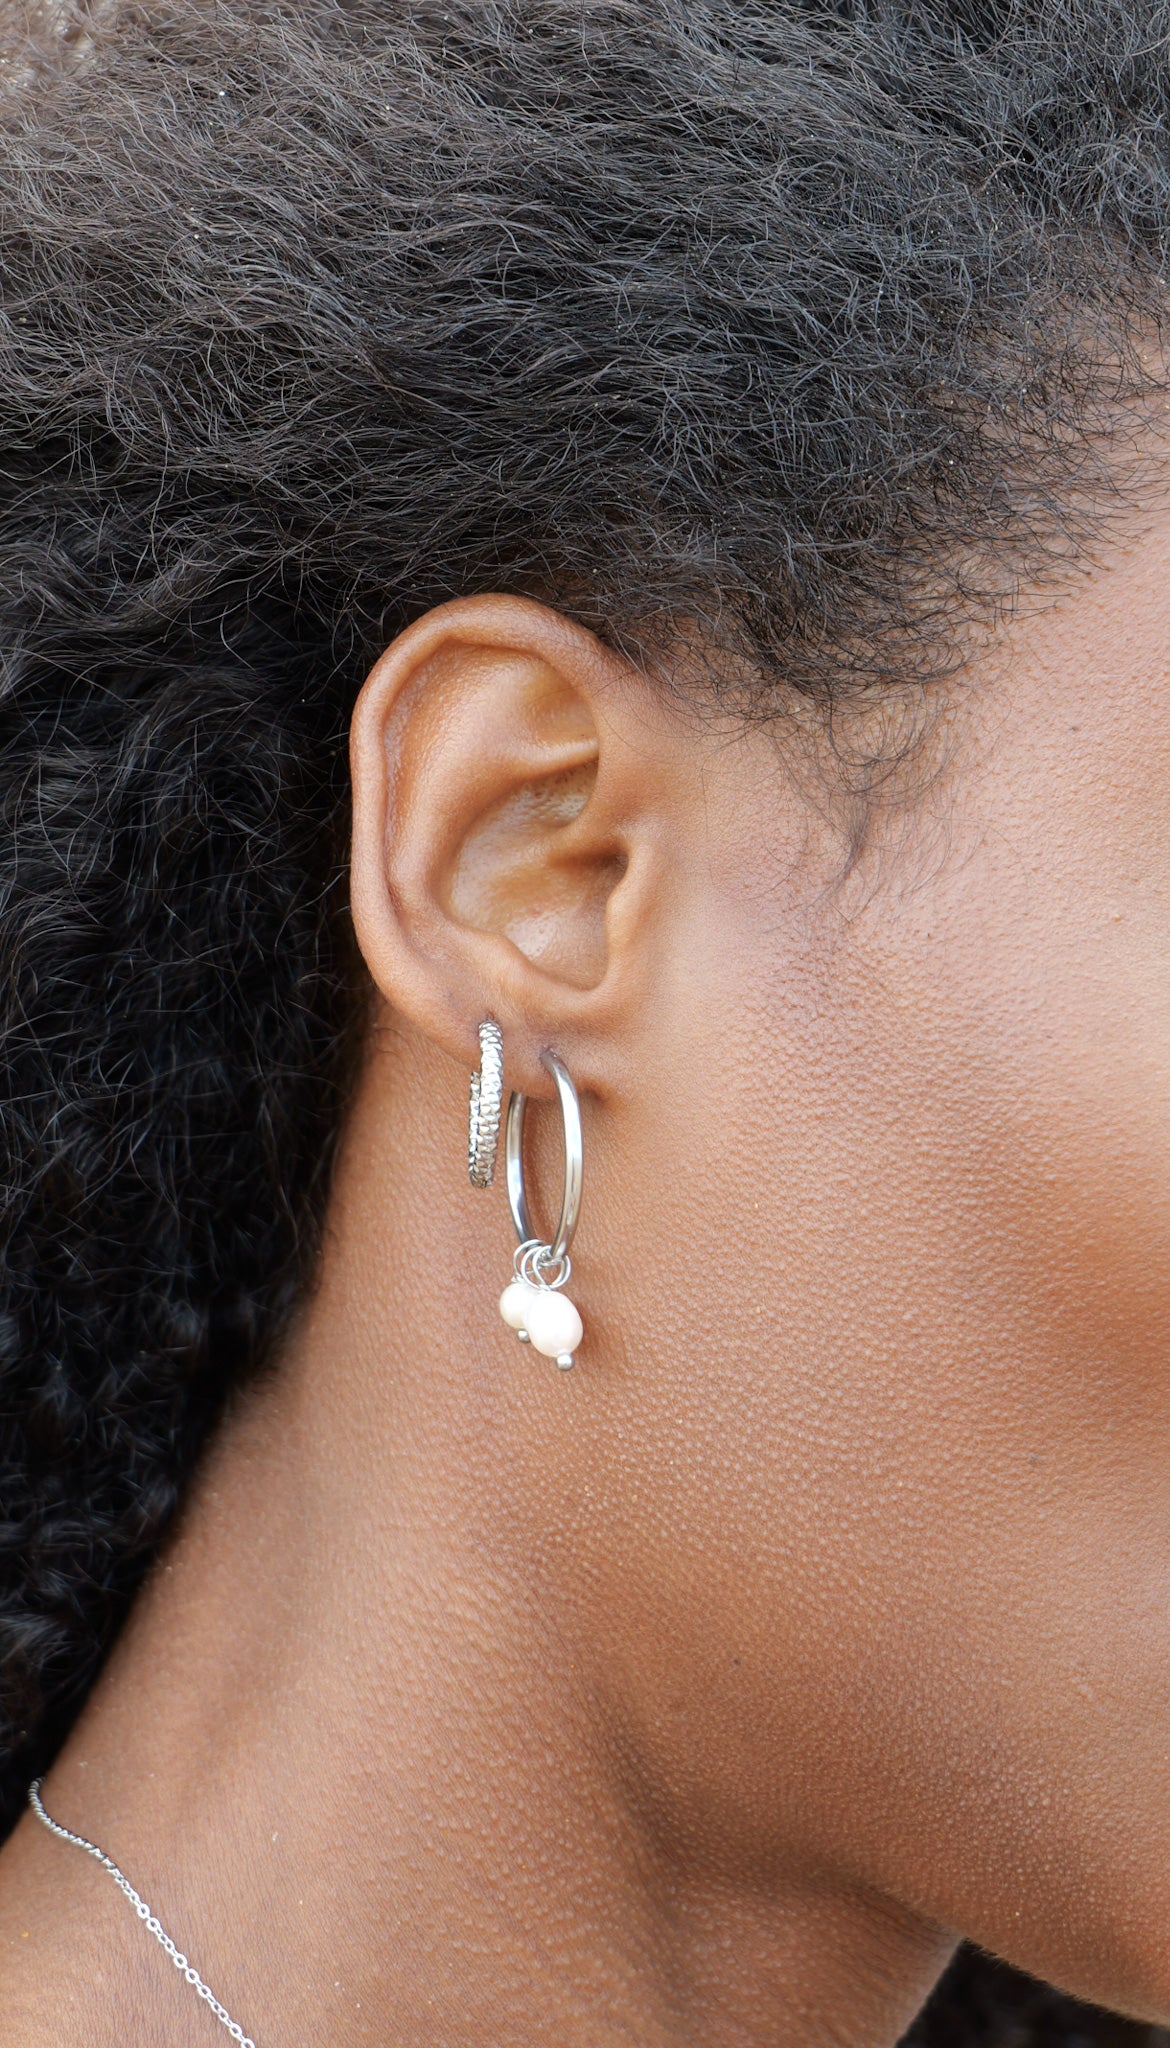 Textured silver hoop earrings